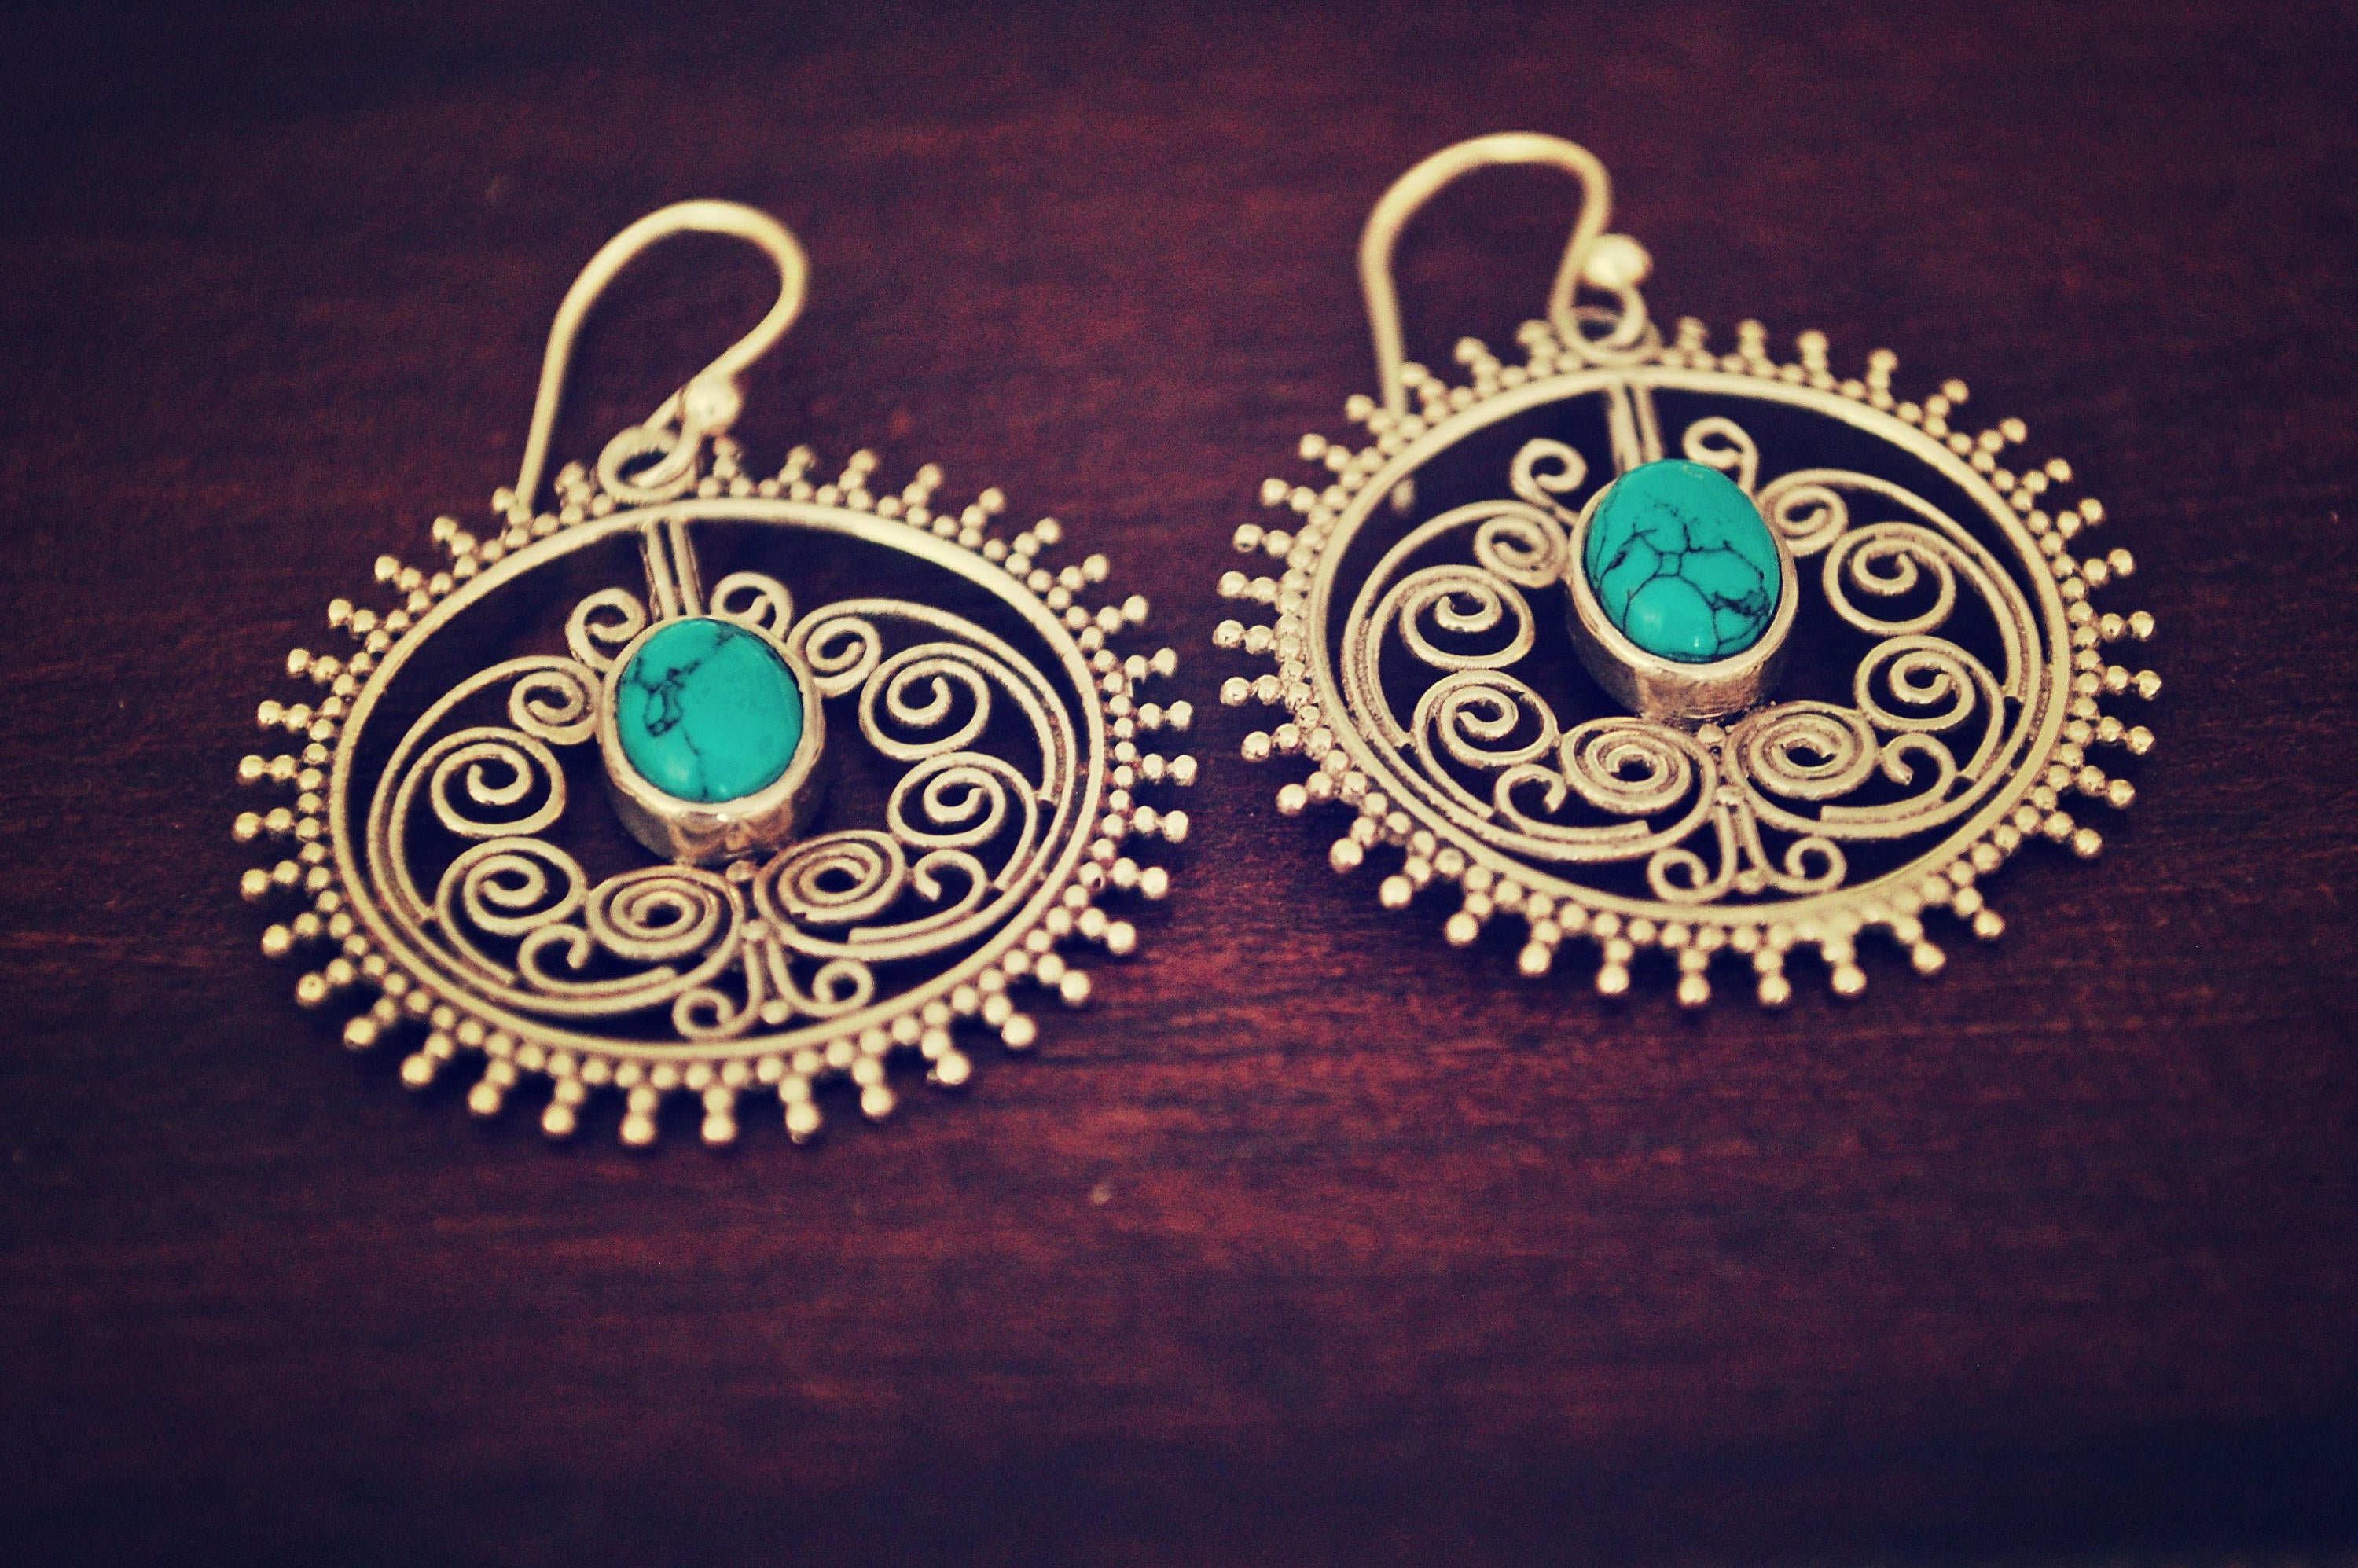 Ethnic Turquoise Earrings - Boho Turquoise Earrings